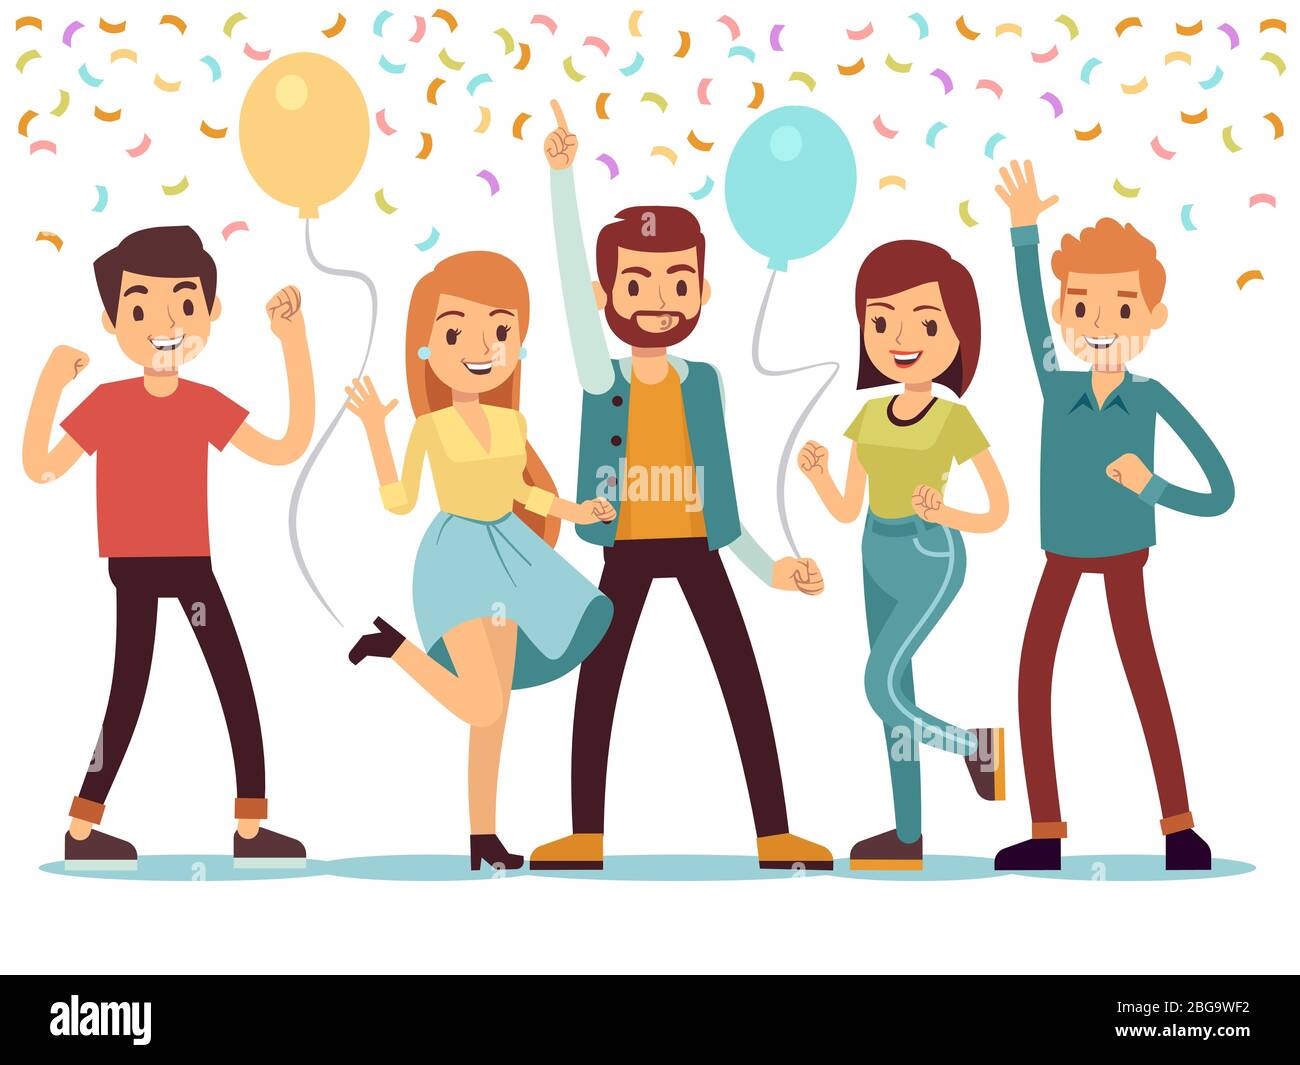 Junge Leute auf der Party lachen und tanzen. Glückliche Männer und Frauen feiern ein wichtiges Ereignis. Vektorgrafik. Menschen auf der Party, Frauen und Männer Gruppe Glück Stock Vektor